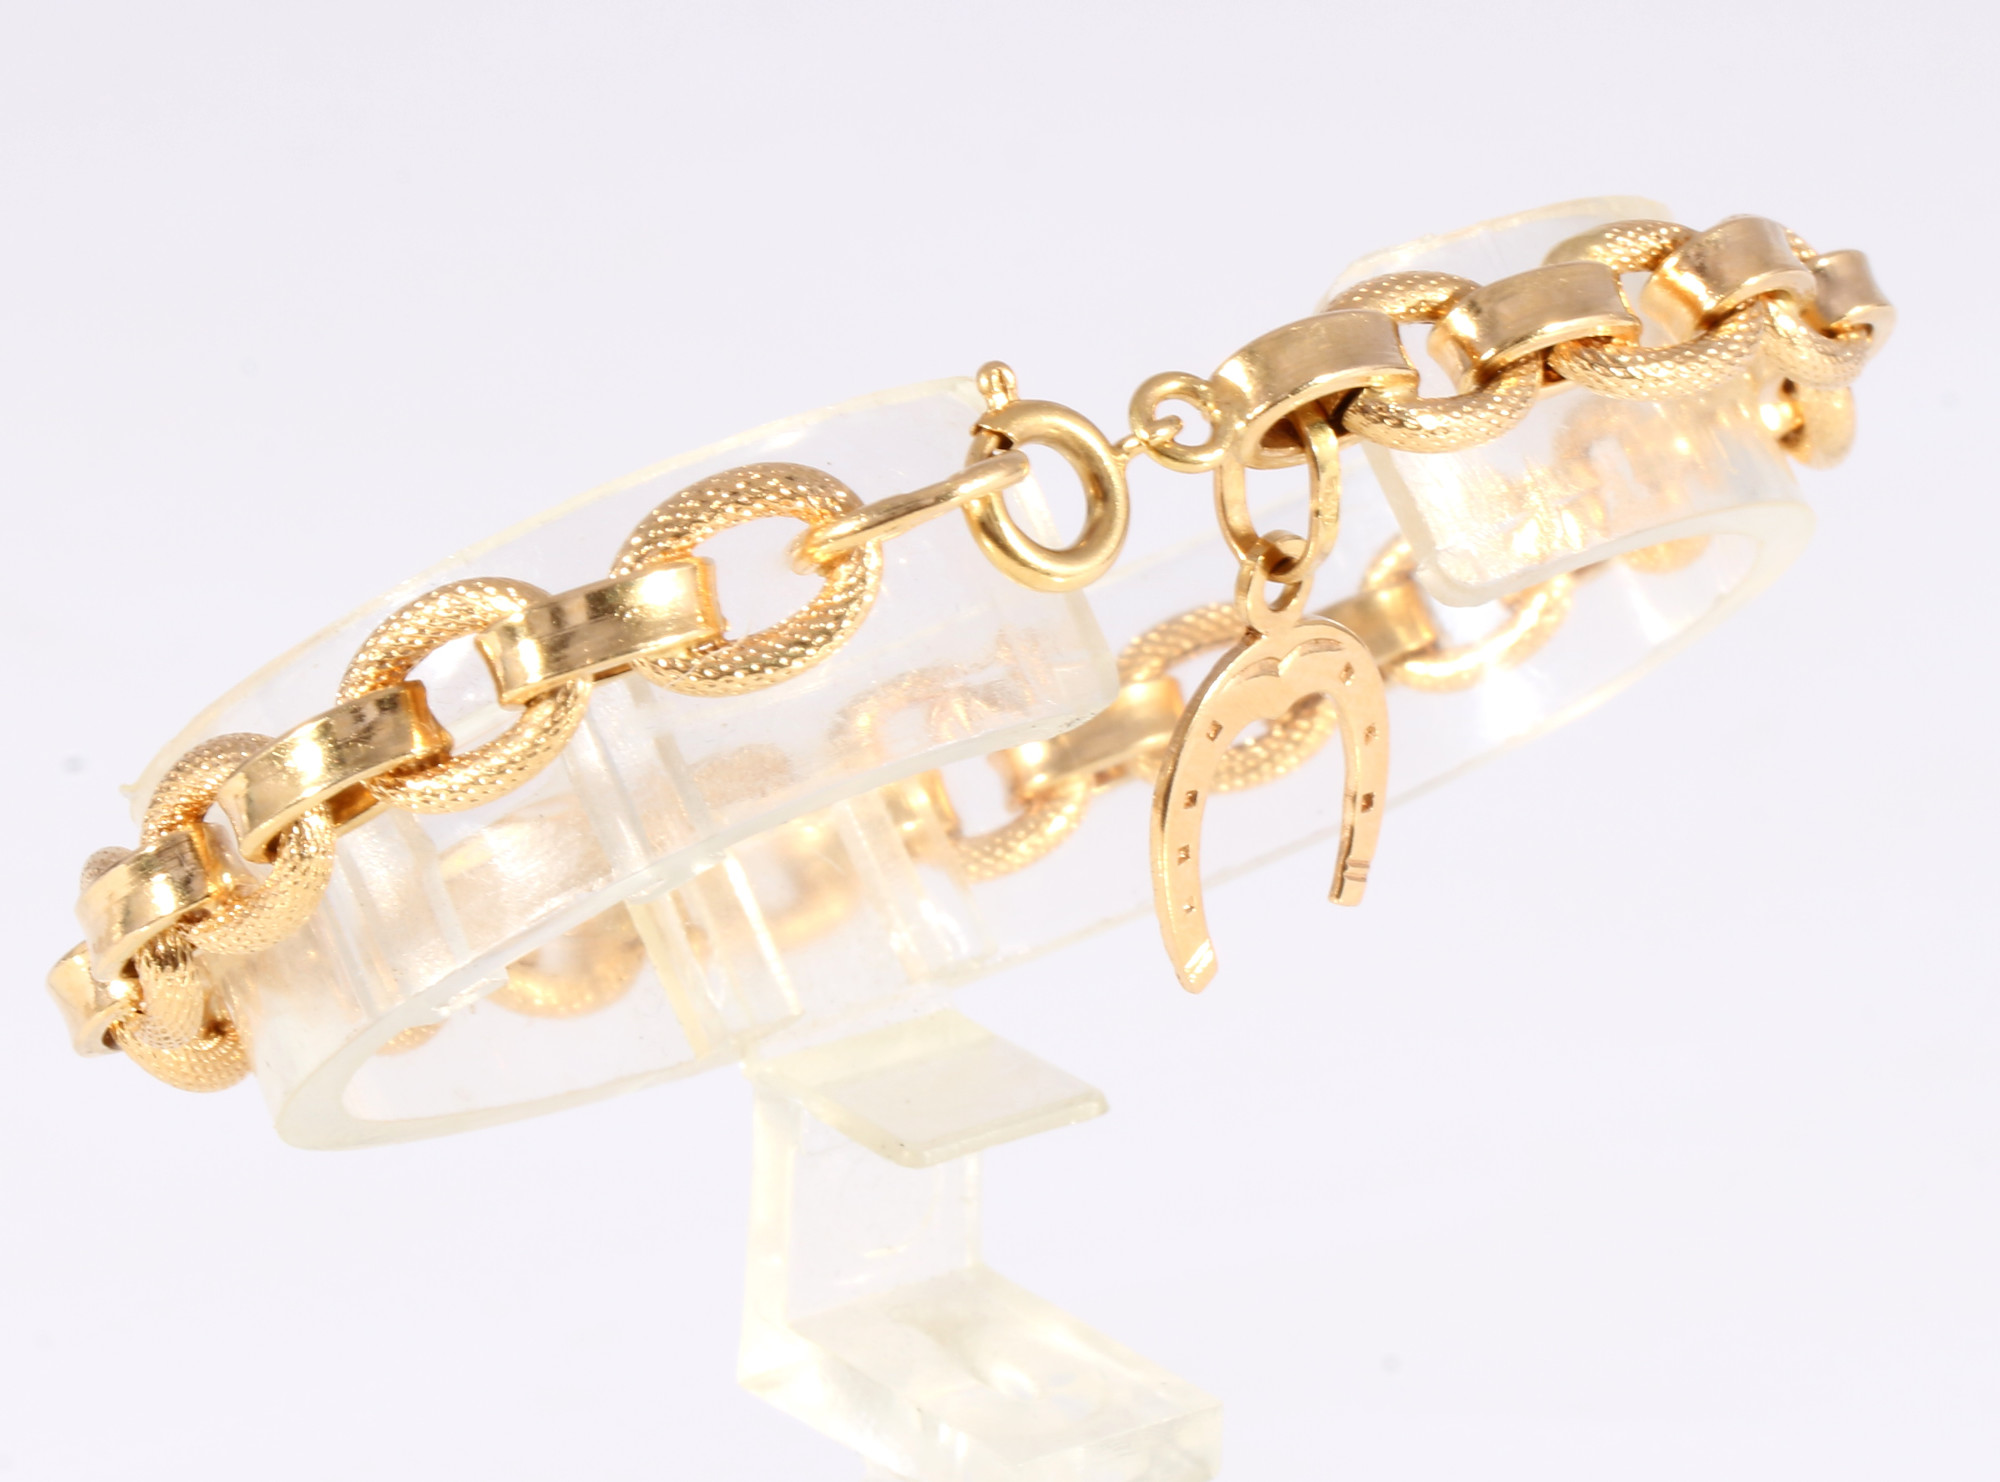 750 gold bracelet with lucky horseshoe, 18K Gold Armband mit Glückshufeisen,